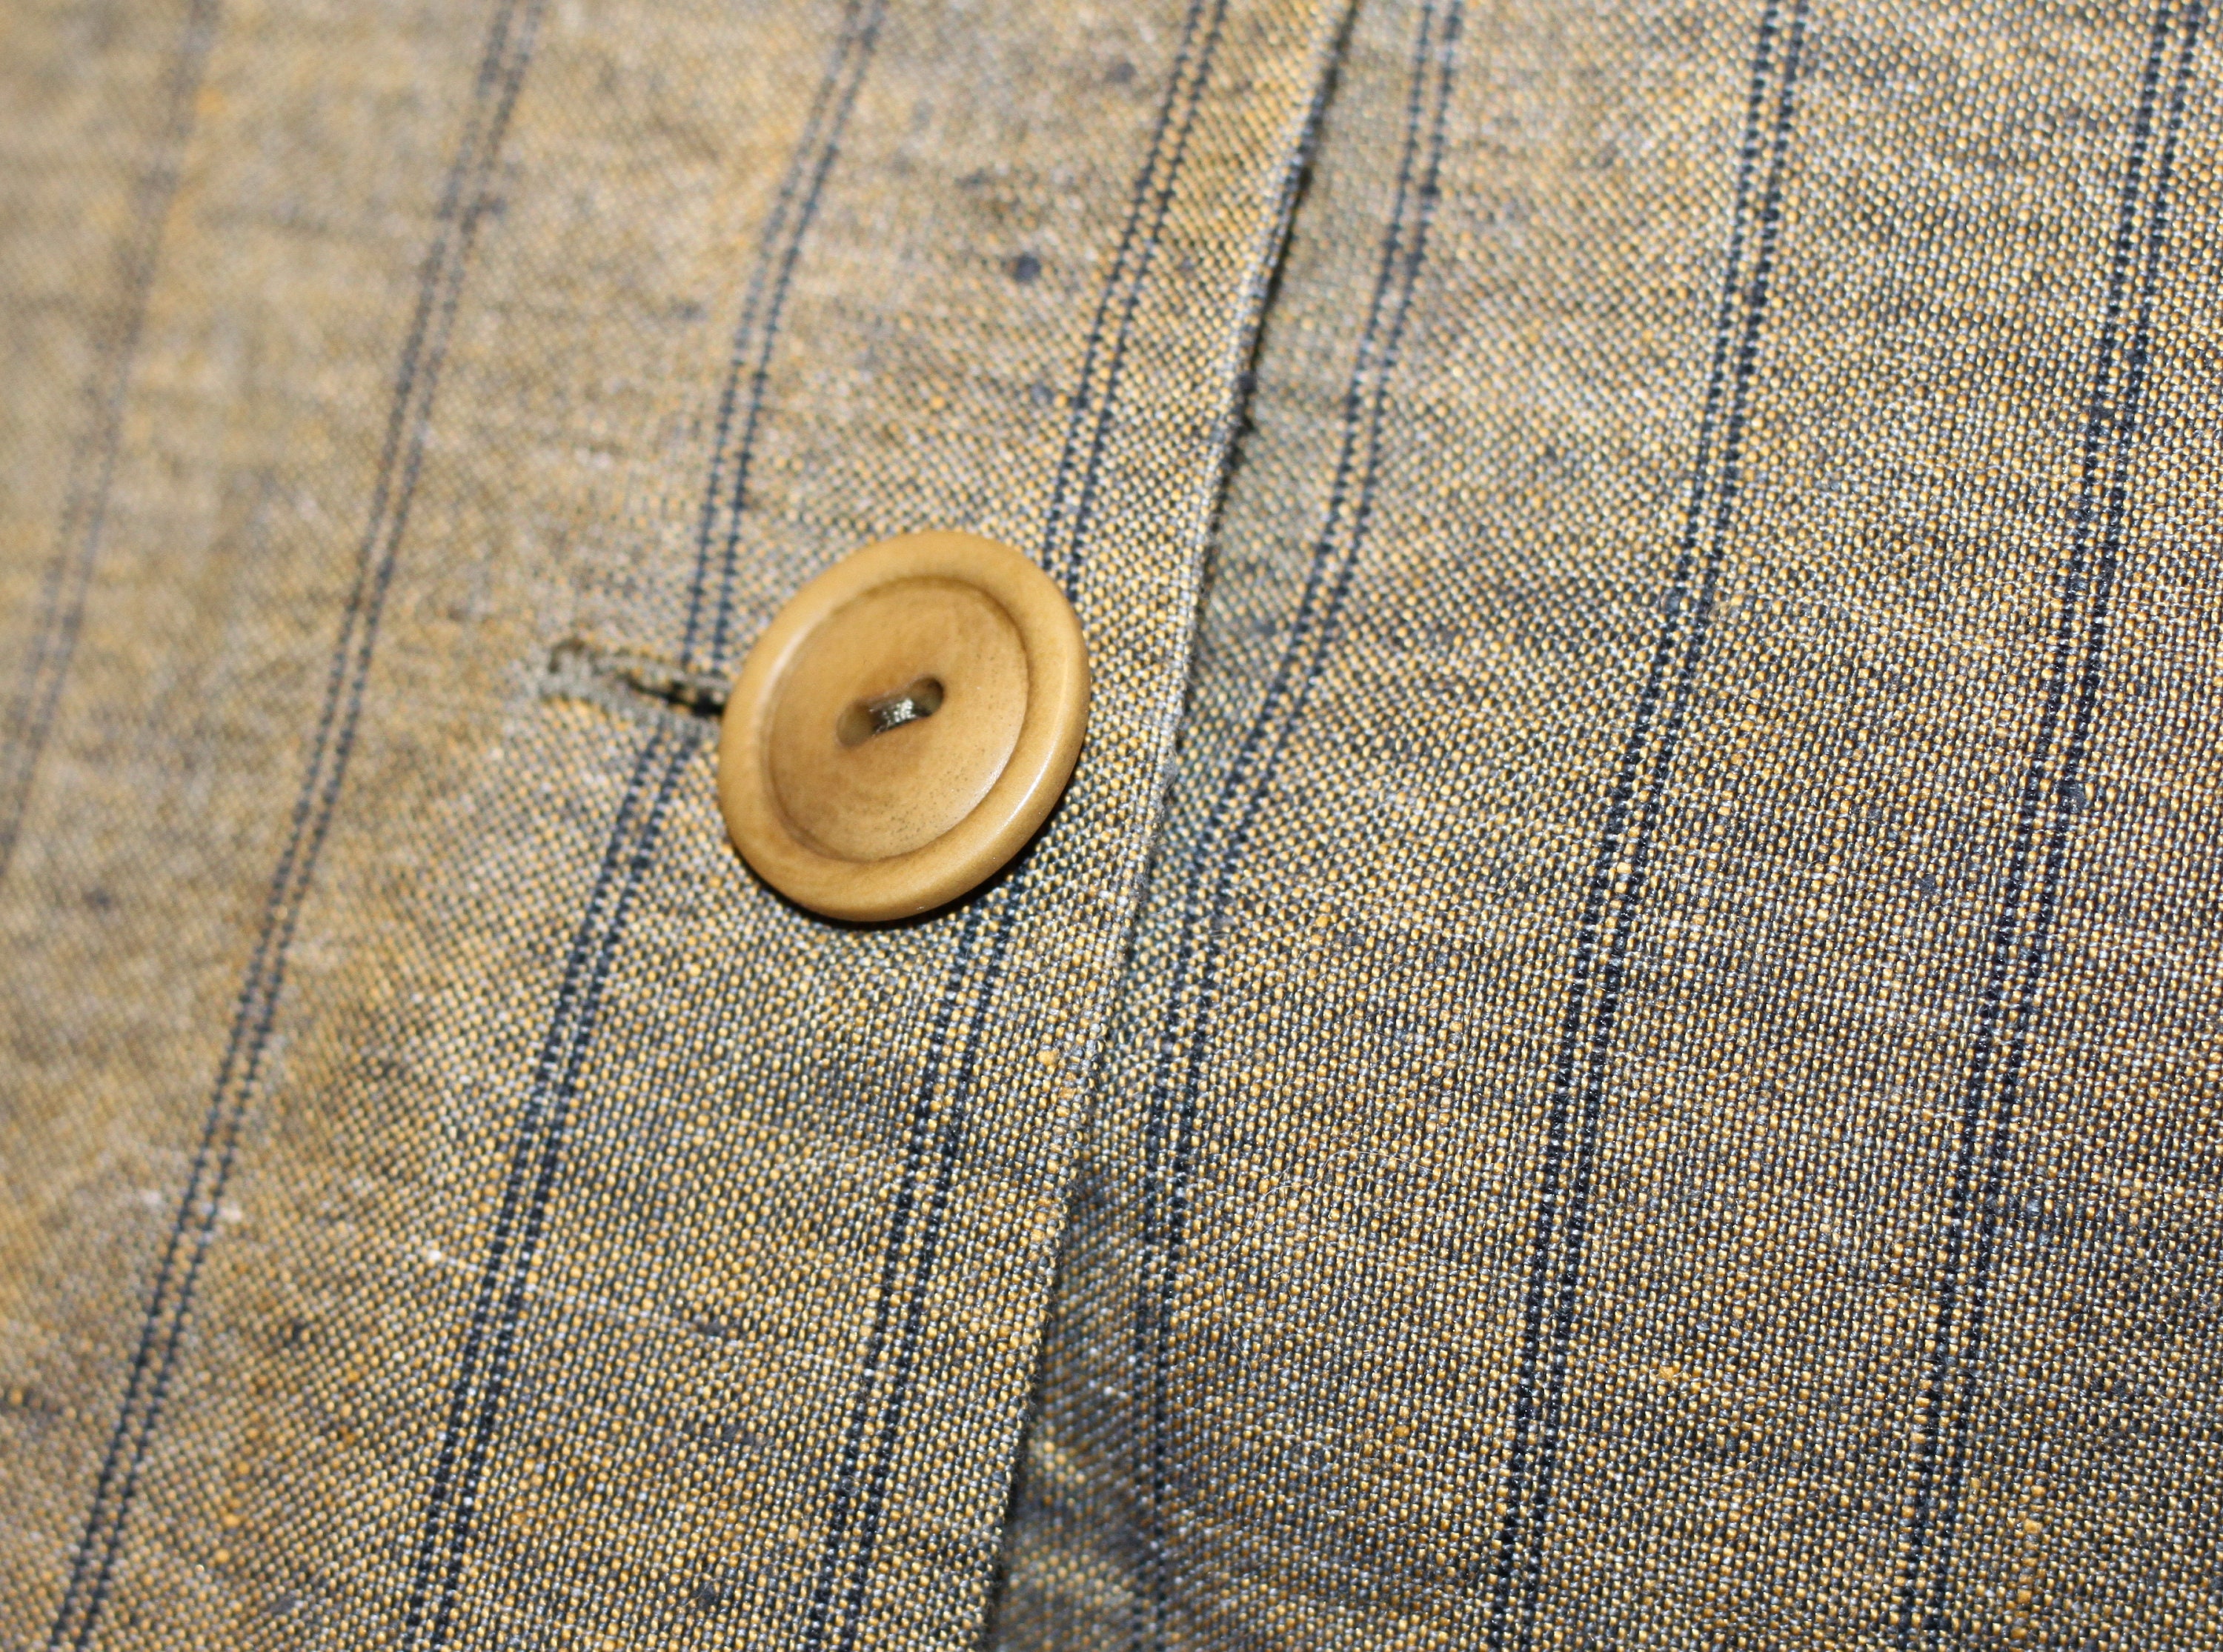 Vintage Jacket Linen Blend Fabric Blazer Summer Khaki Jacket - Etsy